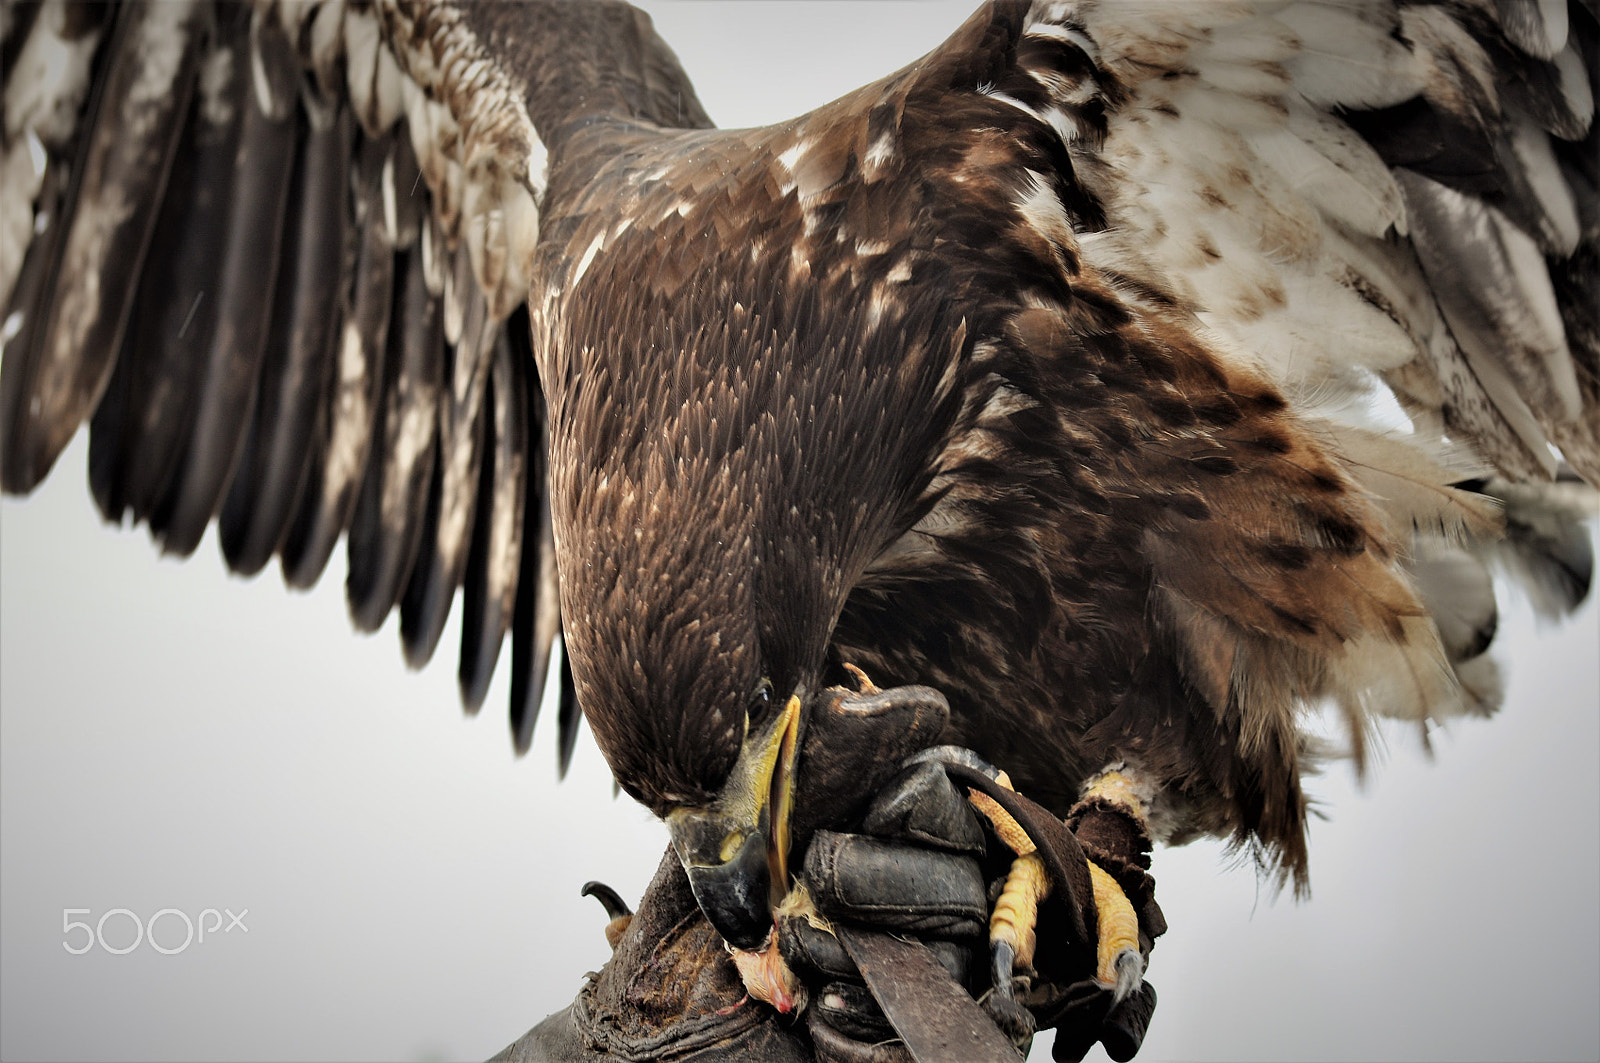 Nikon D90 + Sigma 70-300mm F4-5.6 DG OS sample photo. Captive eagle photography